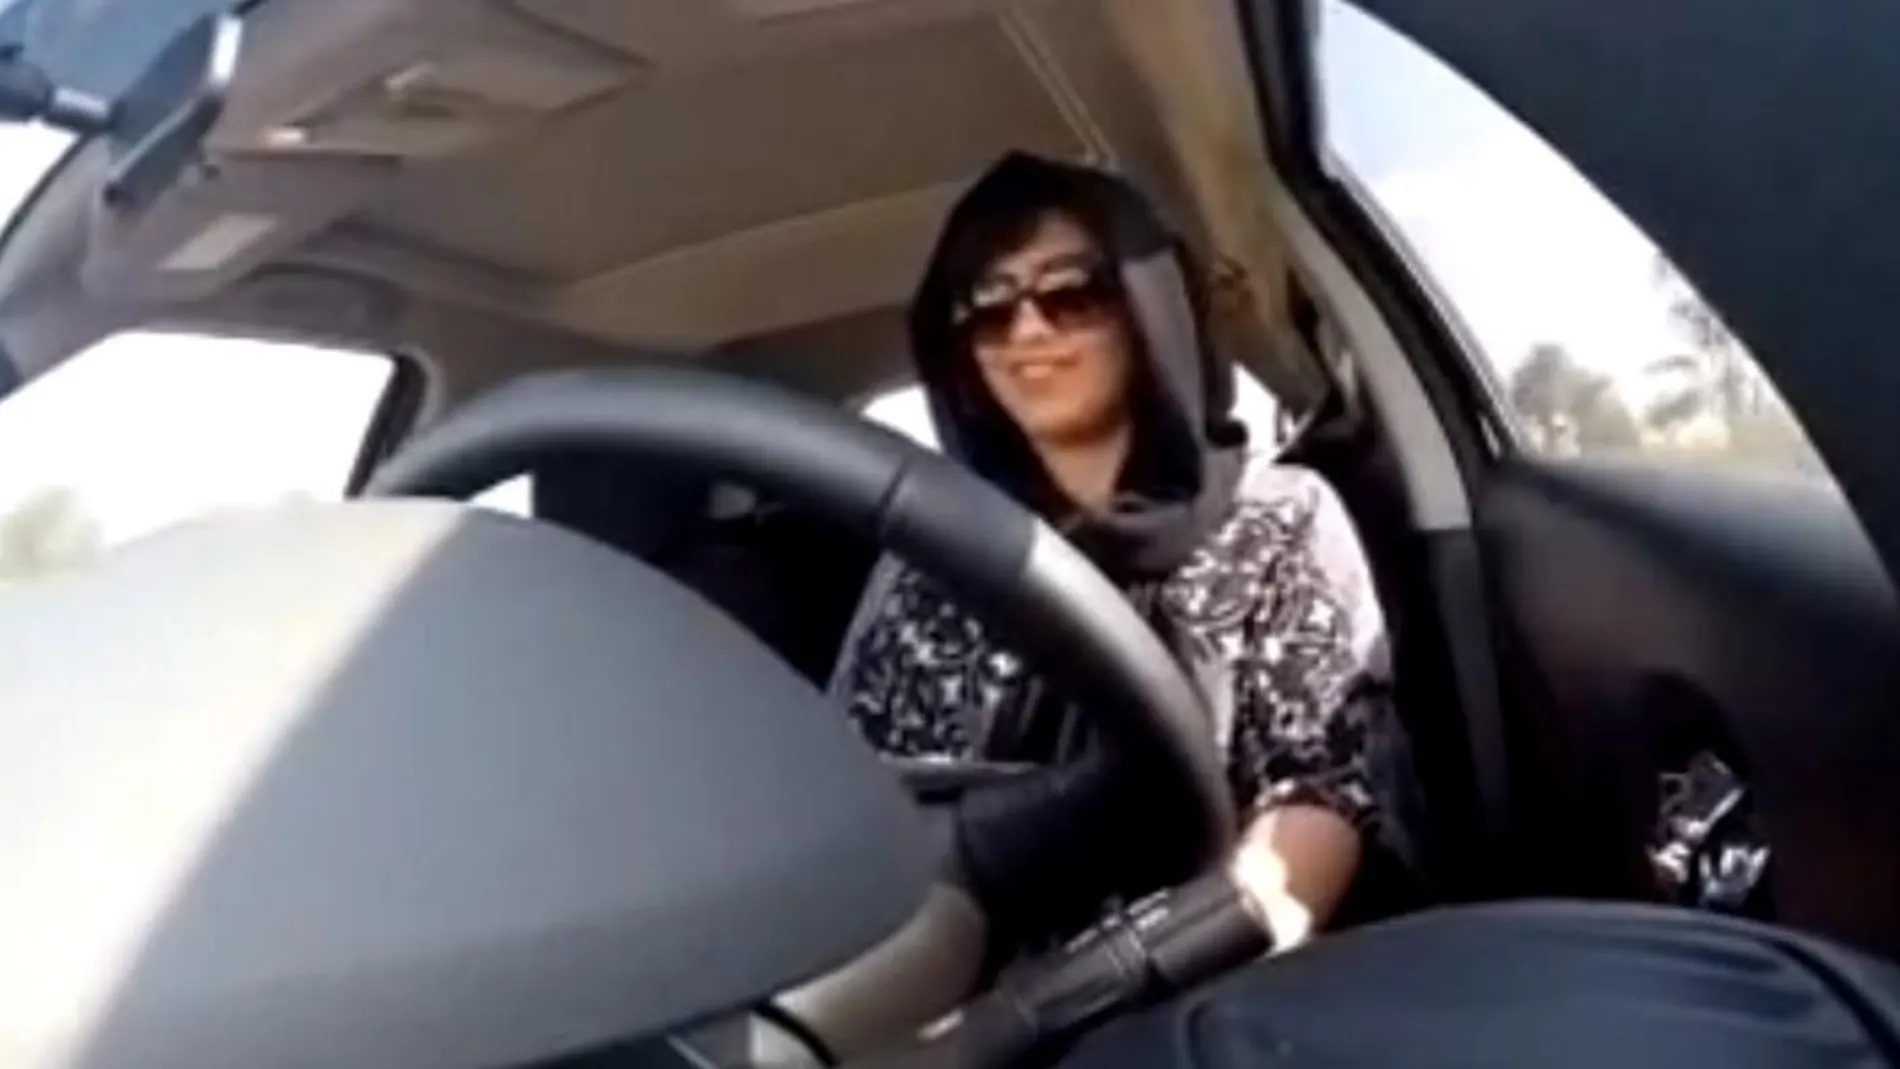 Hathloul fue arrestada el 1 de diciembre por intentar entrar en territorio saudí conduciendo desde Emiratos Arabes Unidos